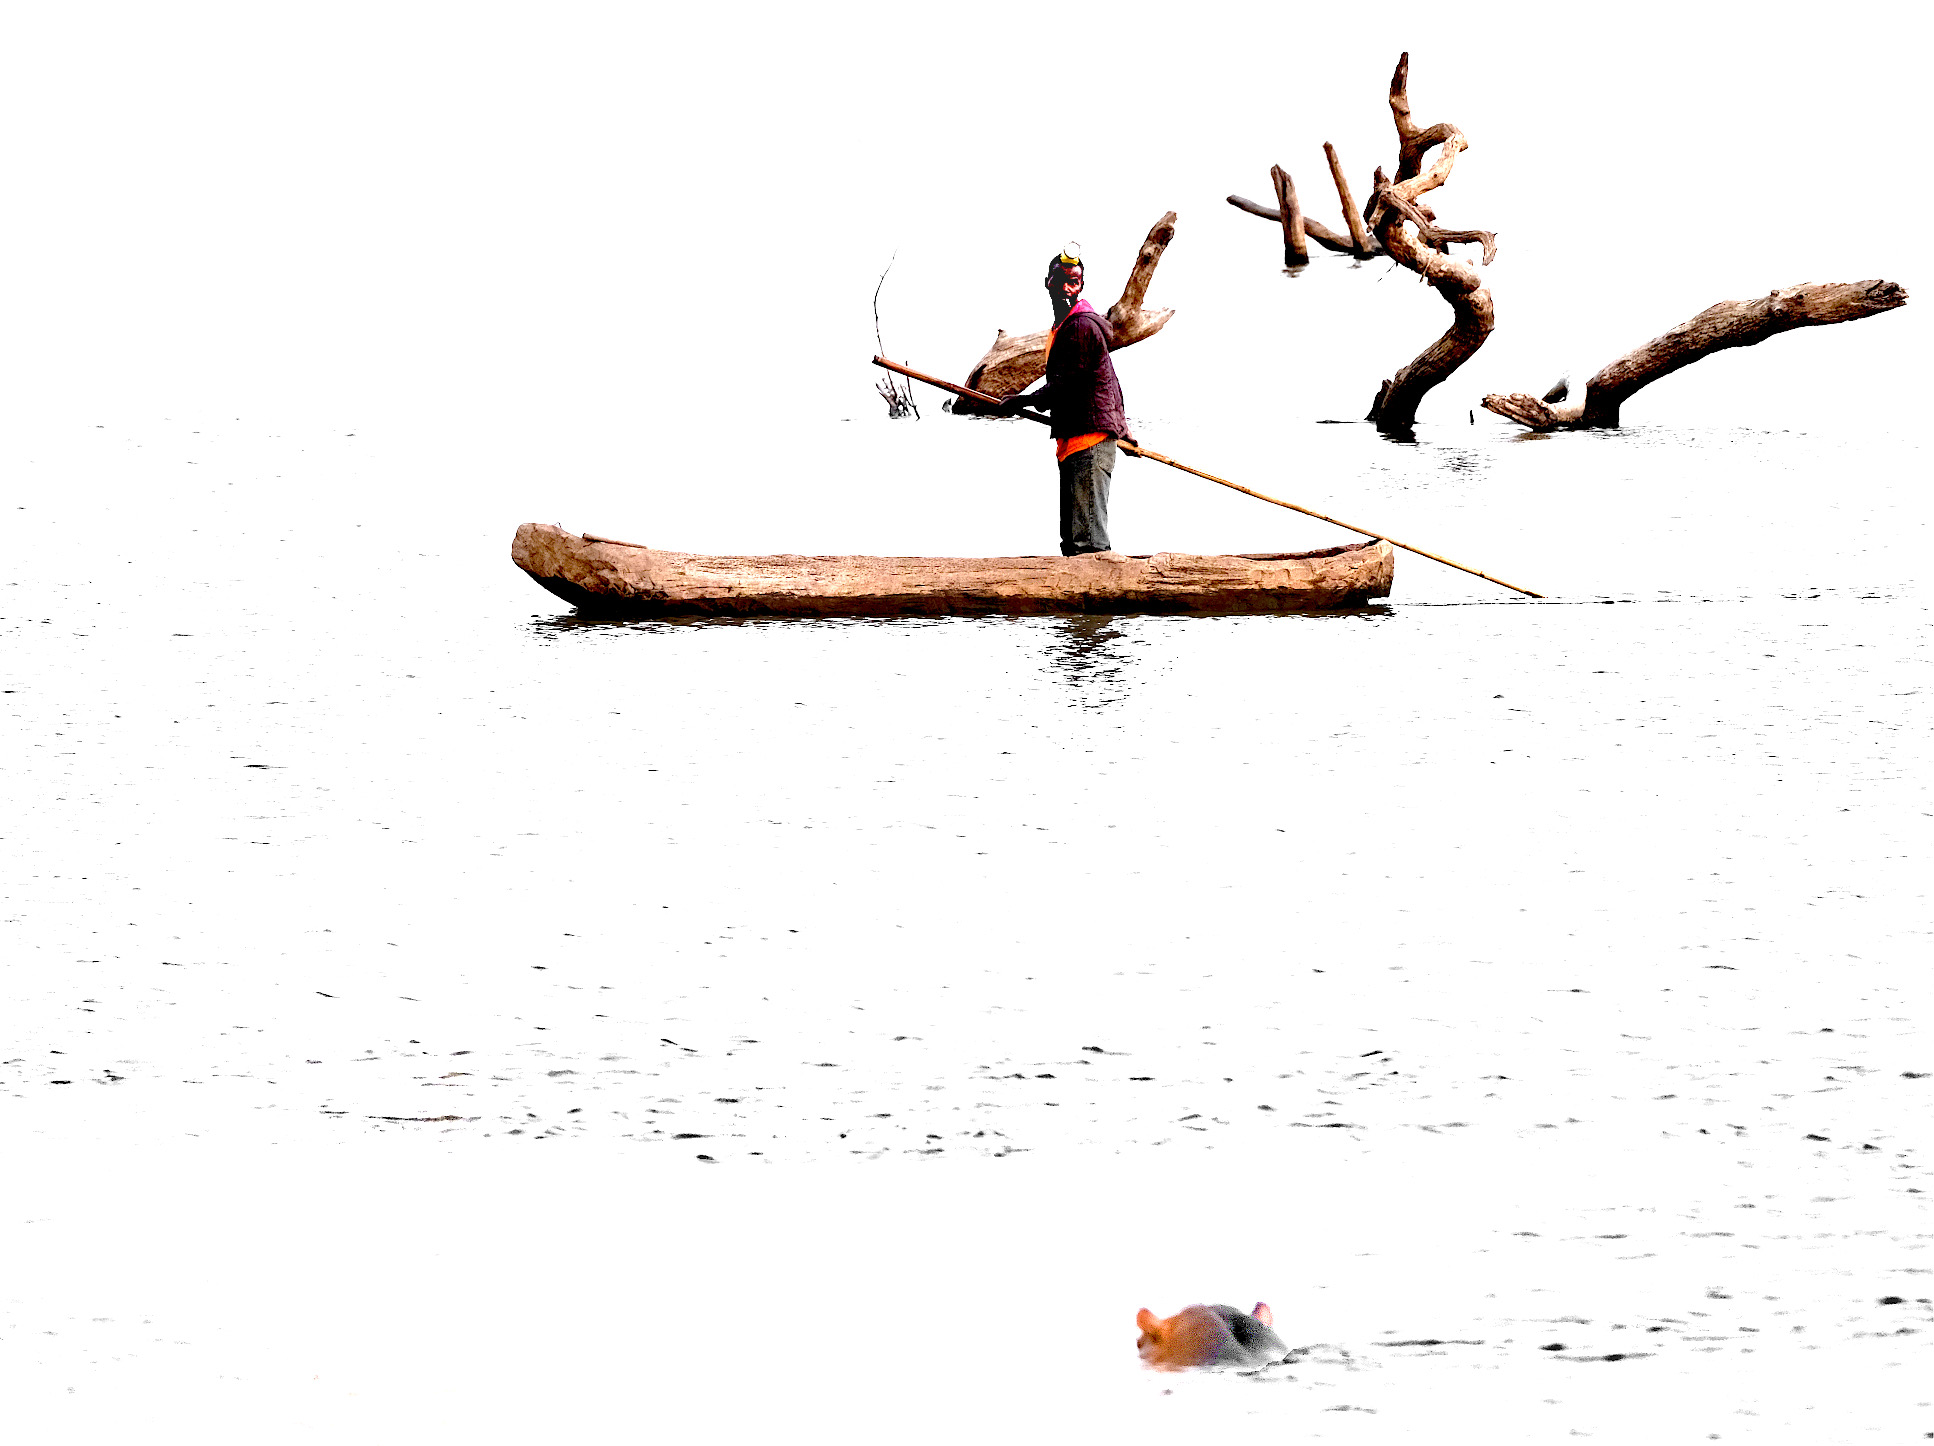 Boatman vs Hippo by Frank St-Pierre